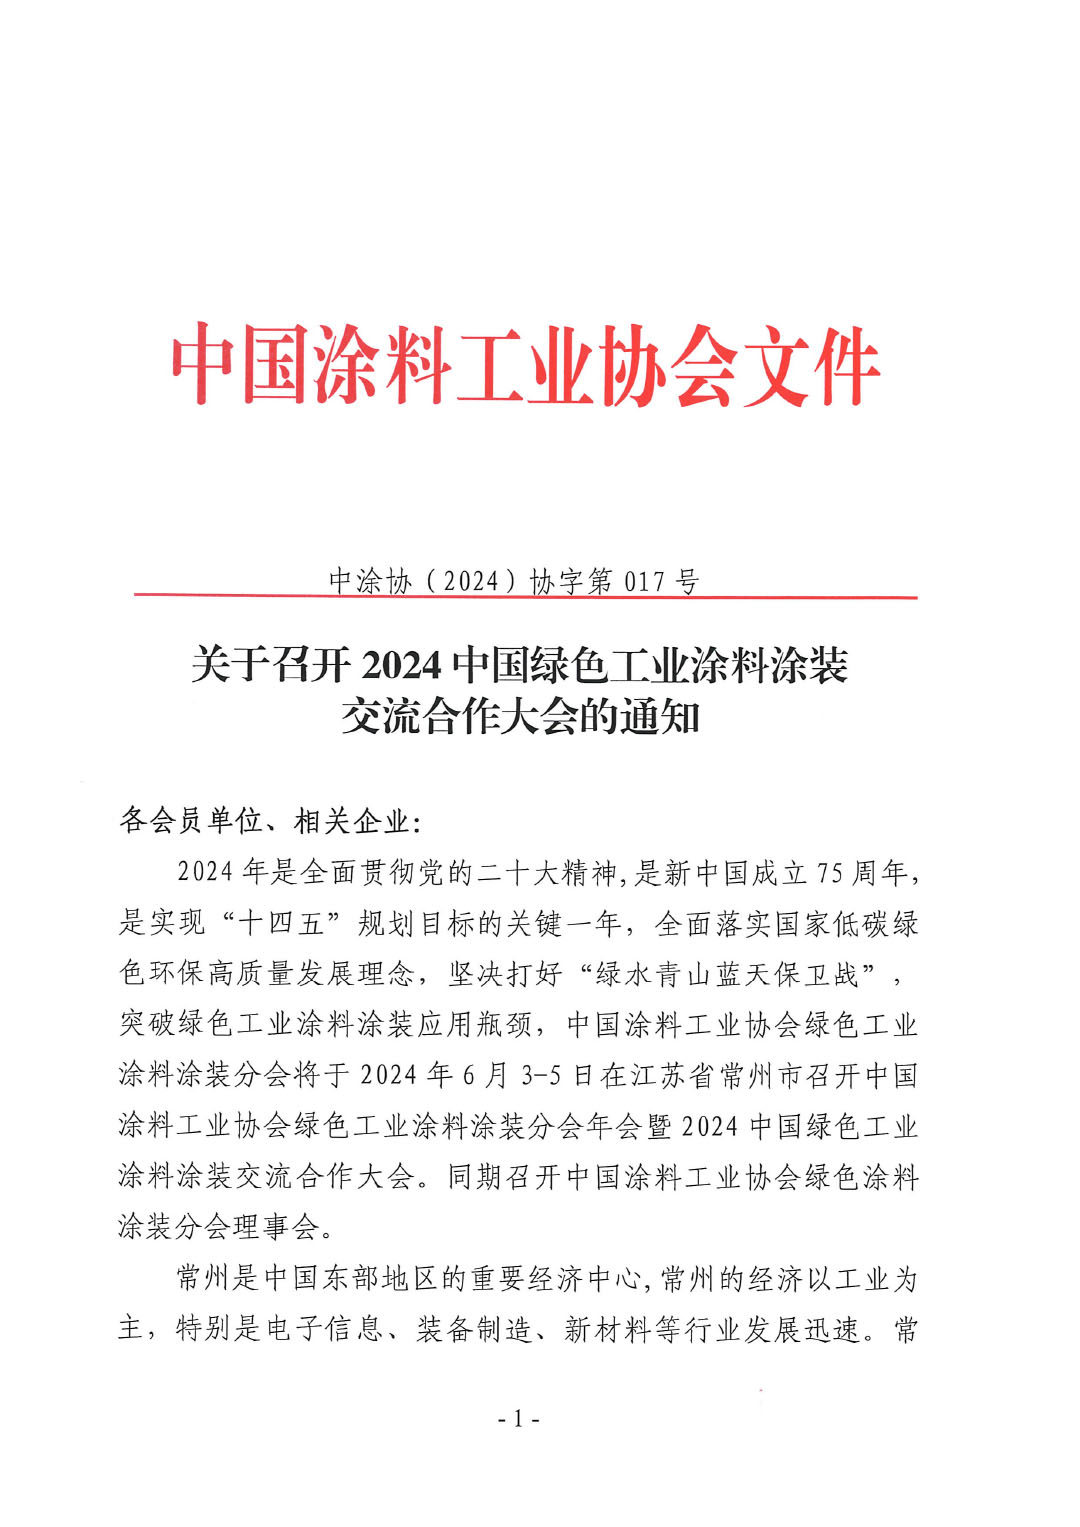 關于召開2024中國綠色工業涂料涂裝交流合作大會的通知-1